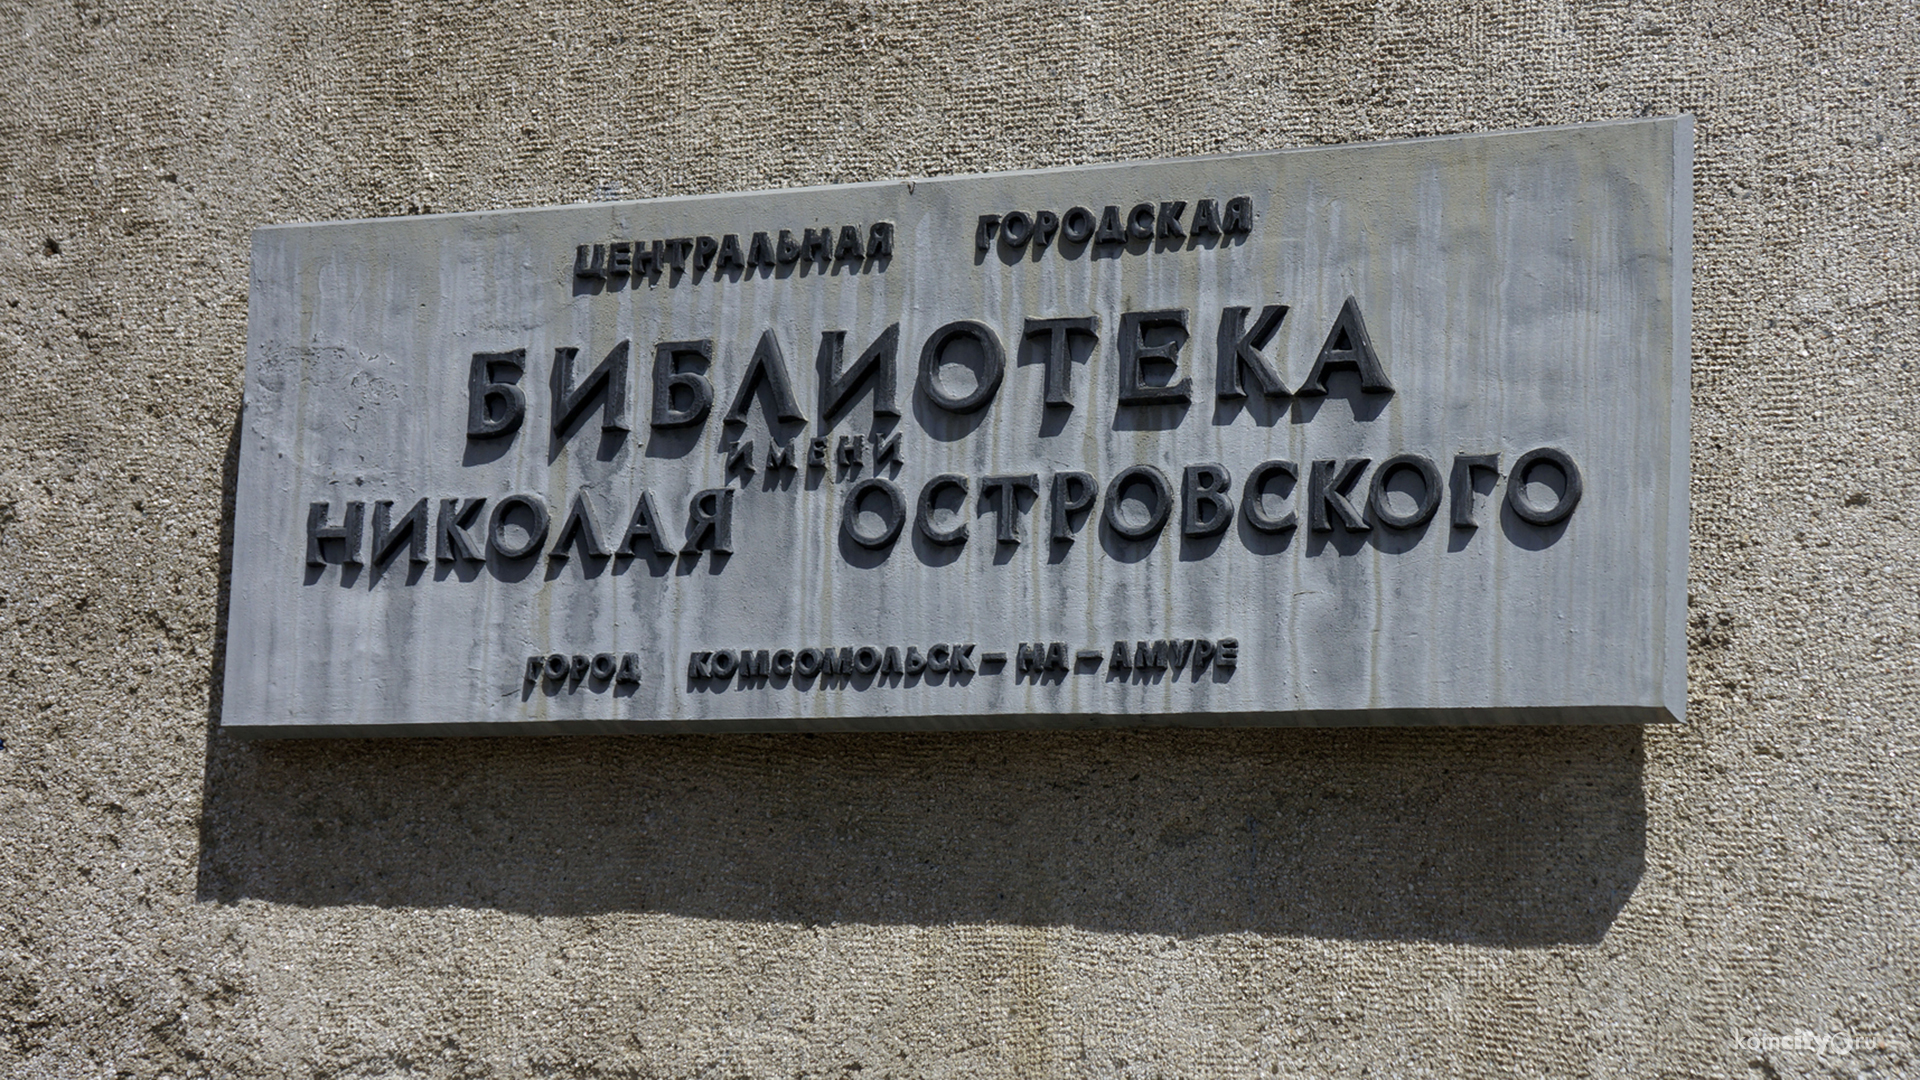 Комсомольска-на-Амуре библиотека Островского получила 300-тысячный грант на проект для путешественников 